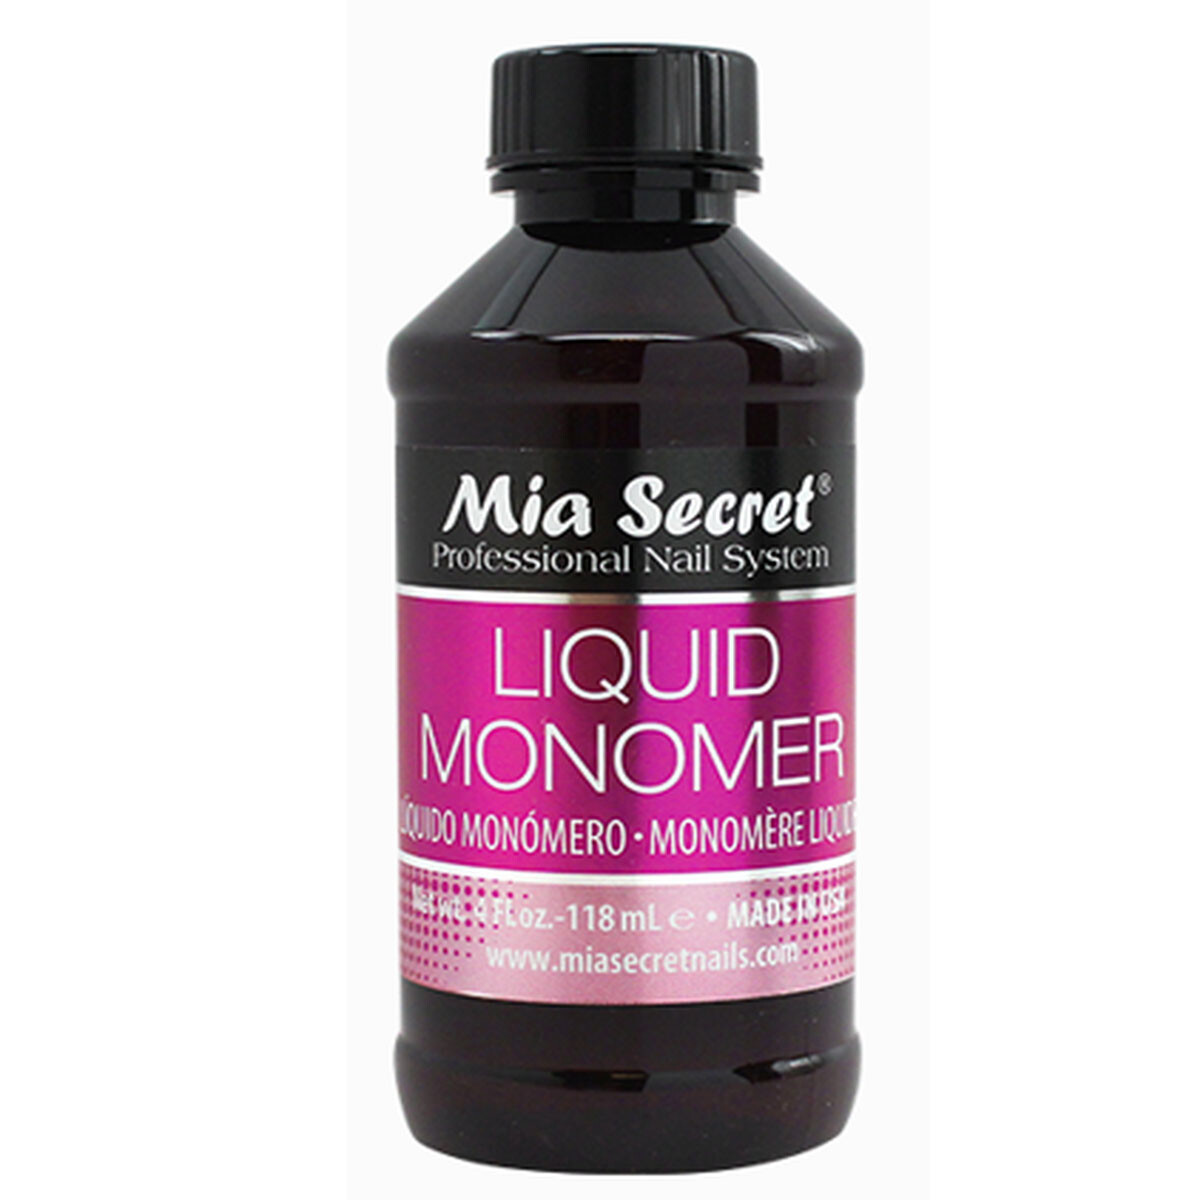 Mia Secret Liquid Monomer 4 oz1 118ml 